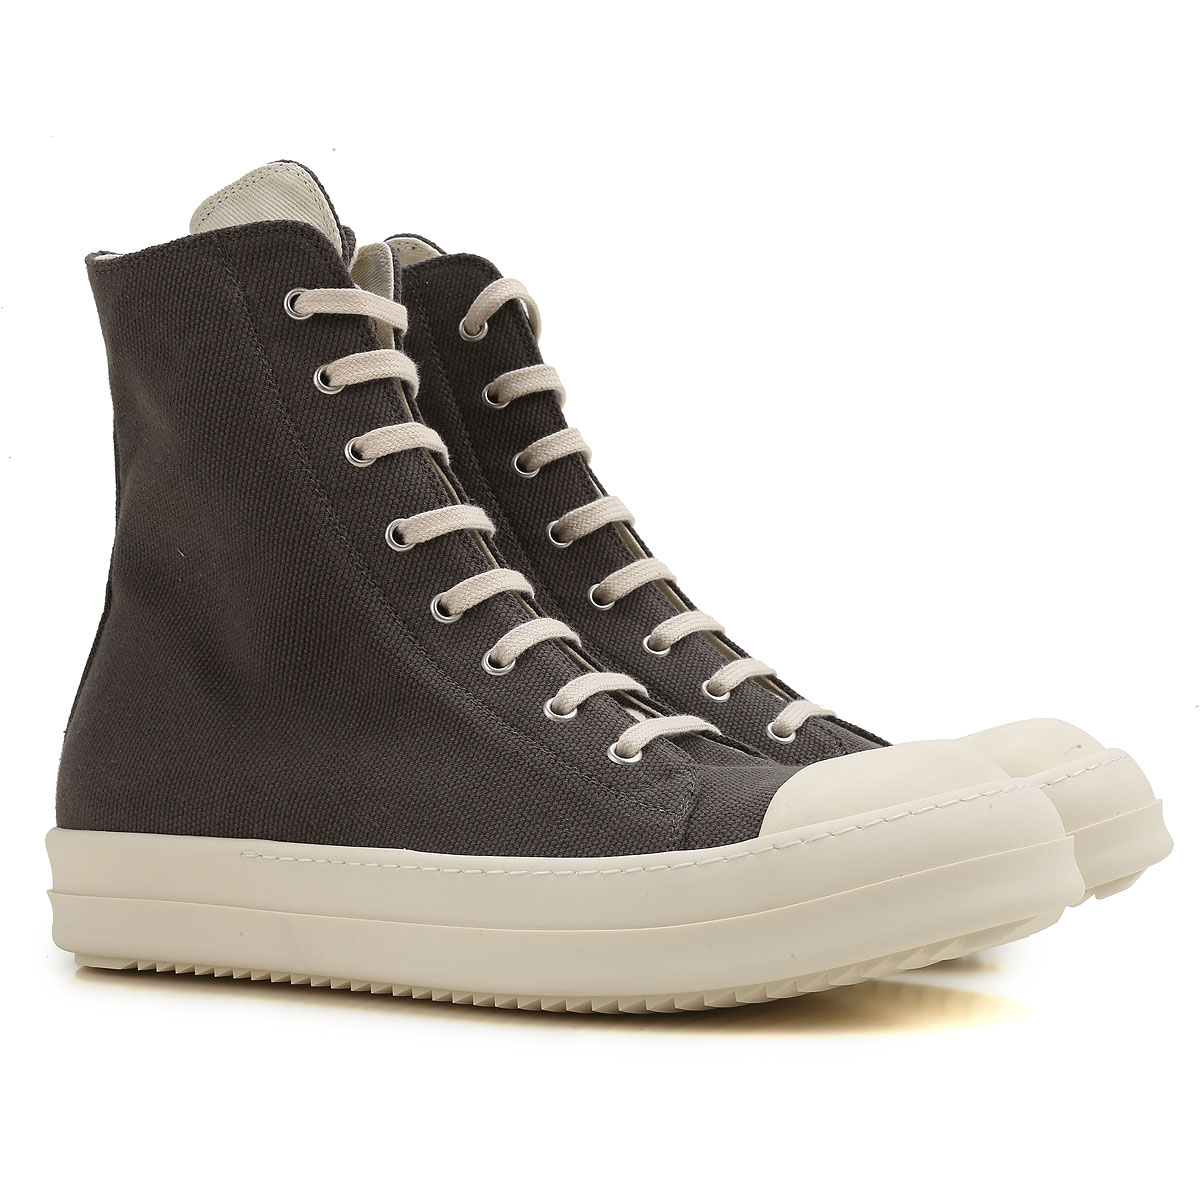 Mens Shoes Rick Owens DRKSHDW, Style code: du17s5800-cvp-781